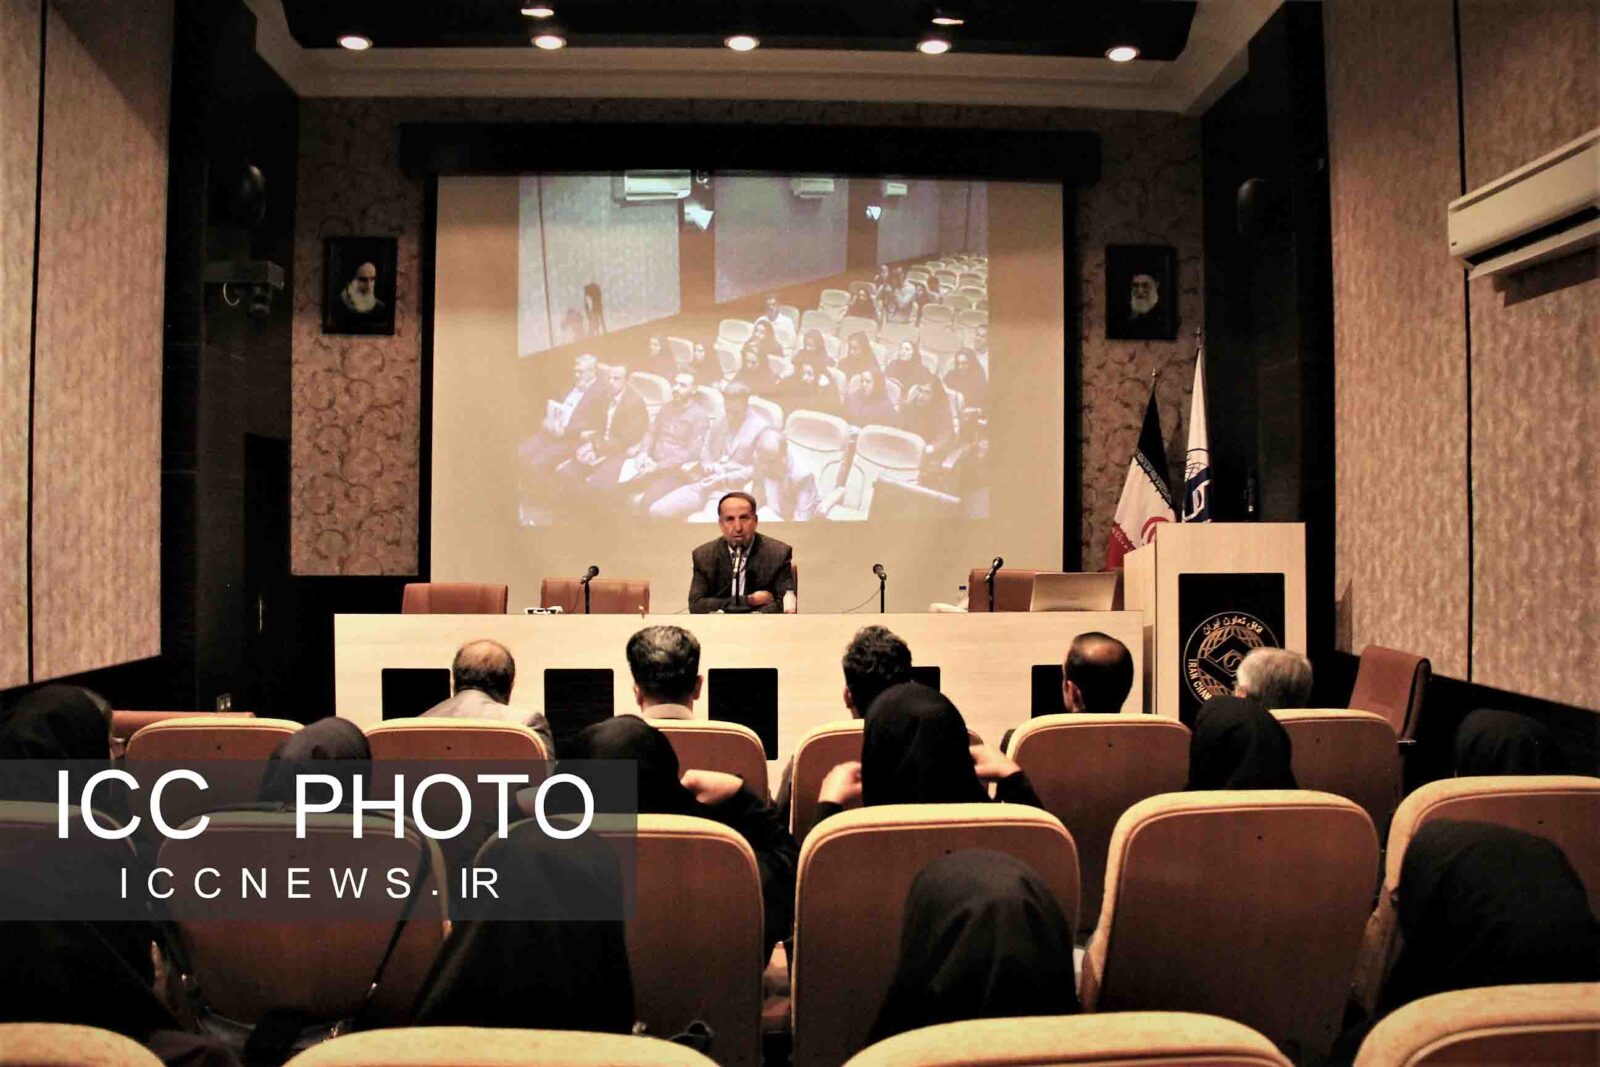 دومین کارگاه آموزشی صدور گواهی فعالیت اتاق تعاون ایران برگزار شد